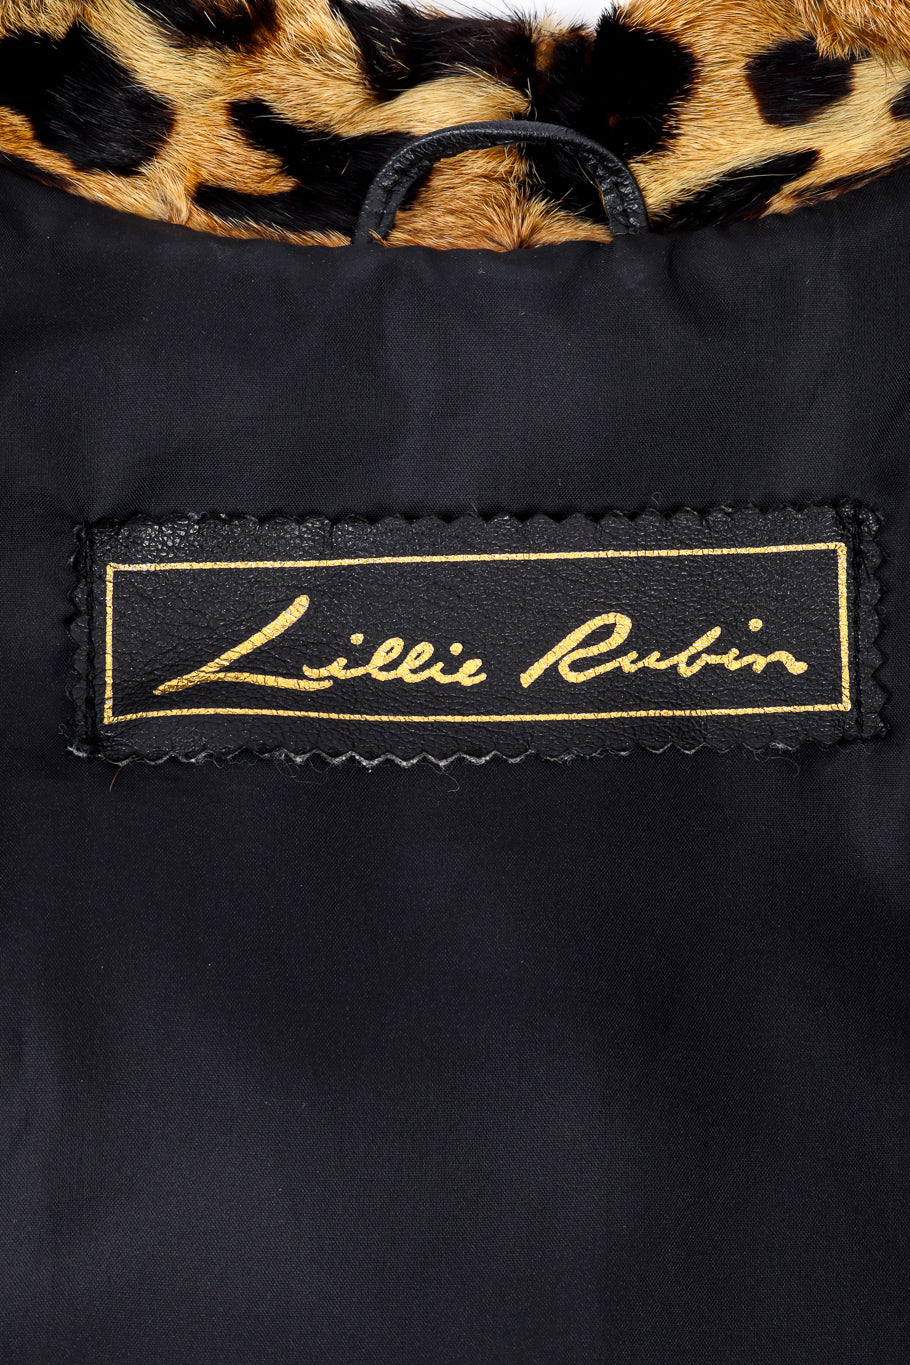 Vintage Lillie Rubin Leopard Trim Leather Jacket signature label @recess la